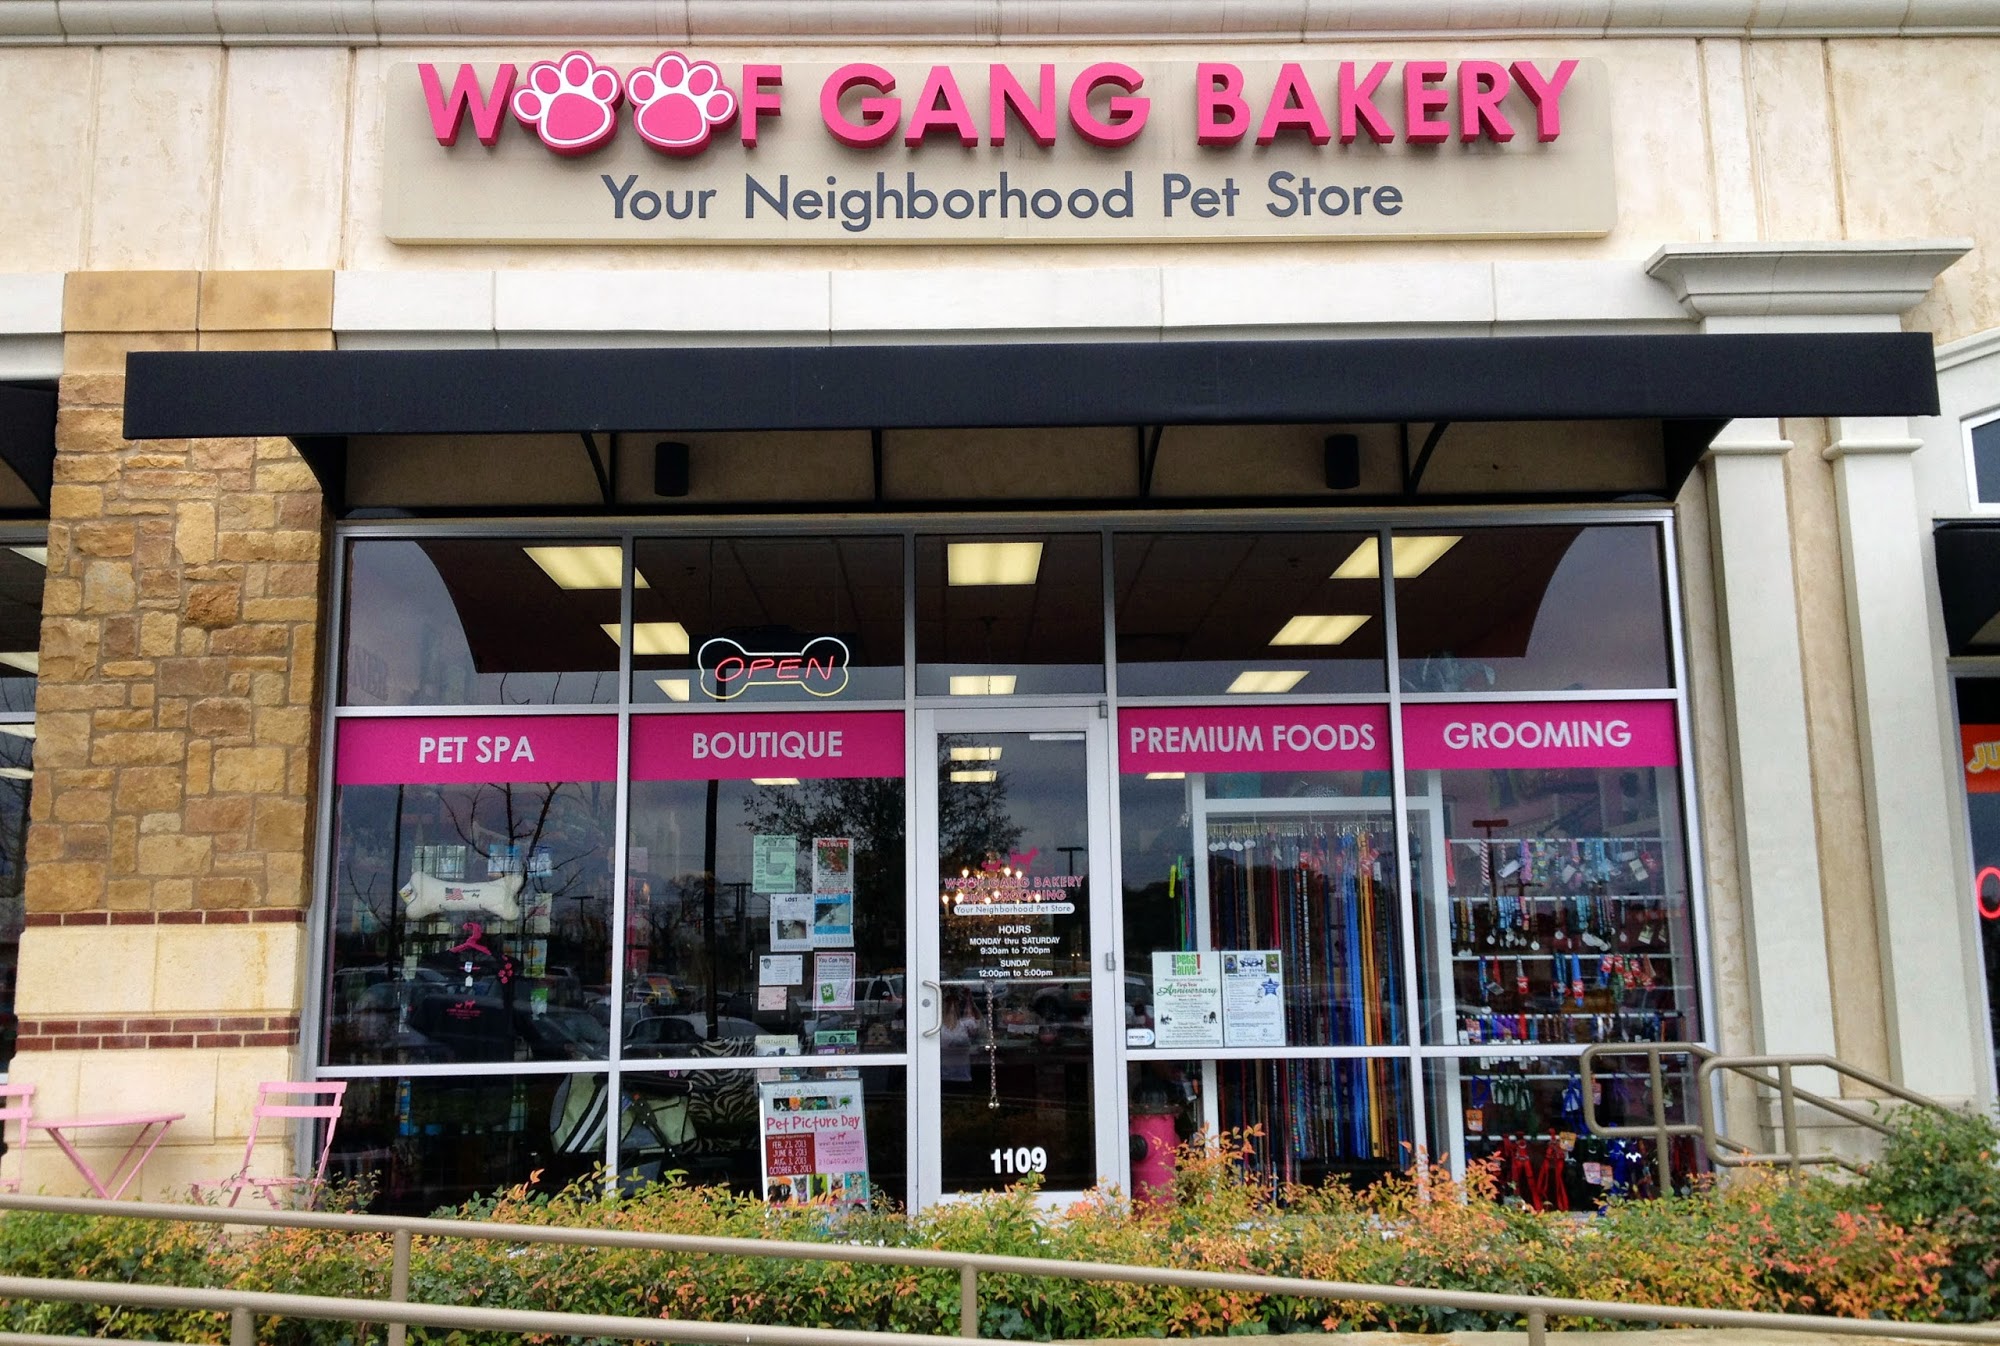 Woof Gang Bakery & Grooming San Antonio